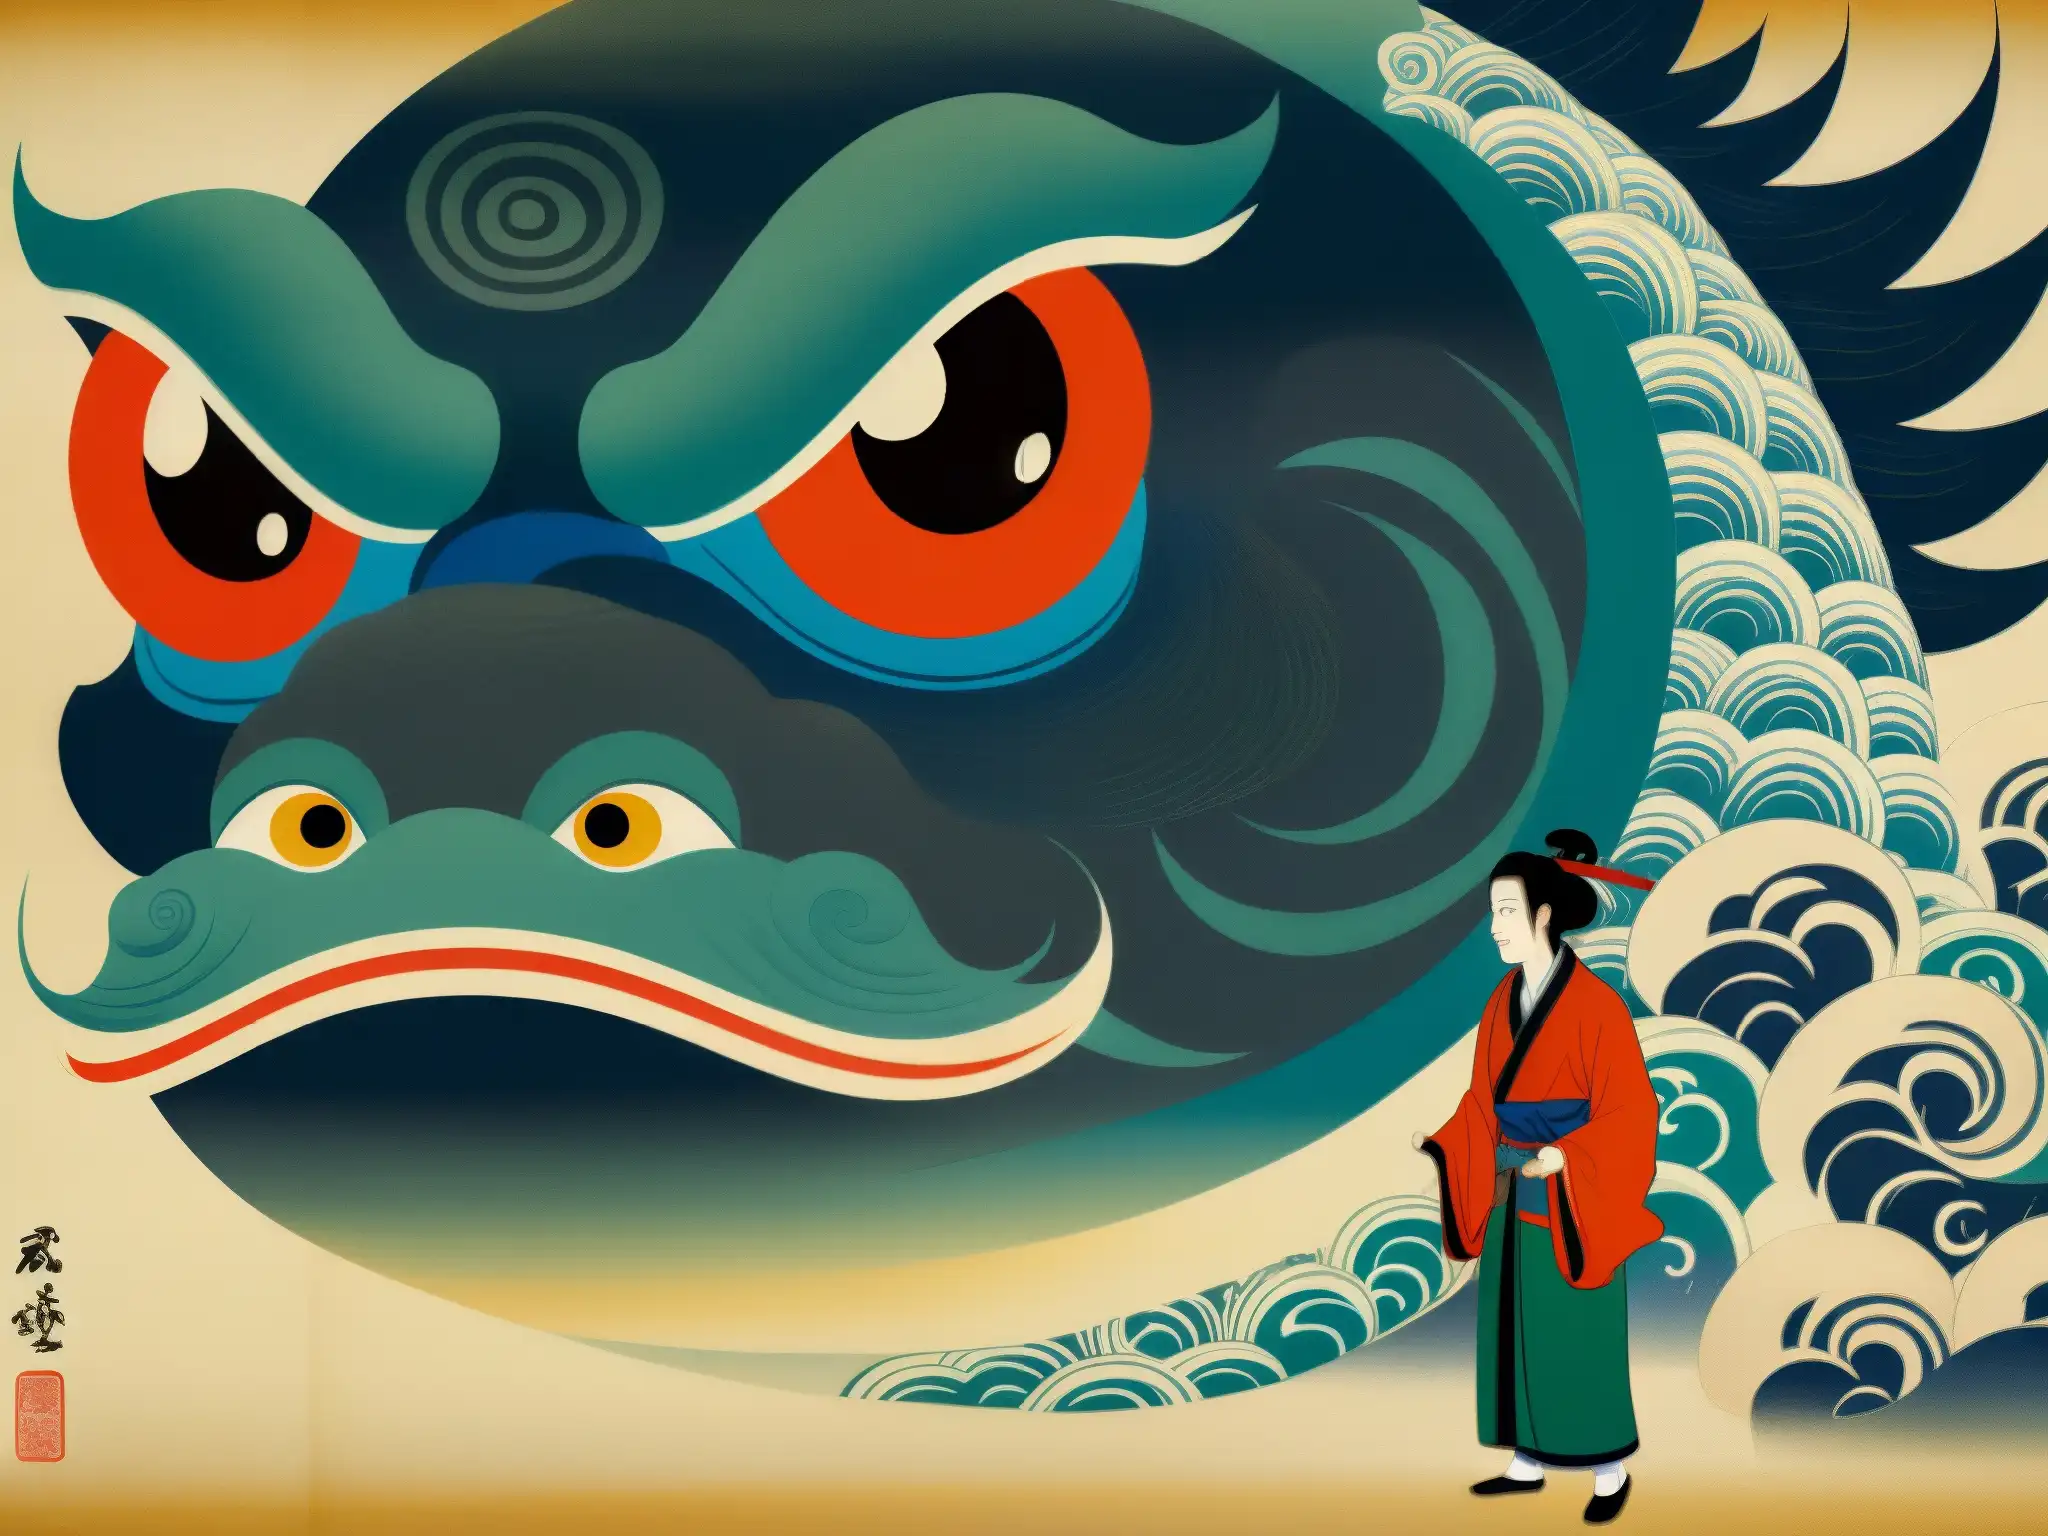 Una impactante pintura japonesa de la leyenda Shirime, con un ojo trasero y colores vibrantes, evocando la misteriosa esencia de la leyenda japonesa